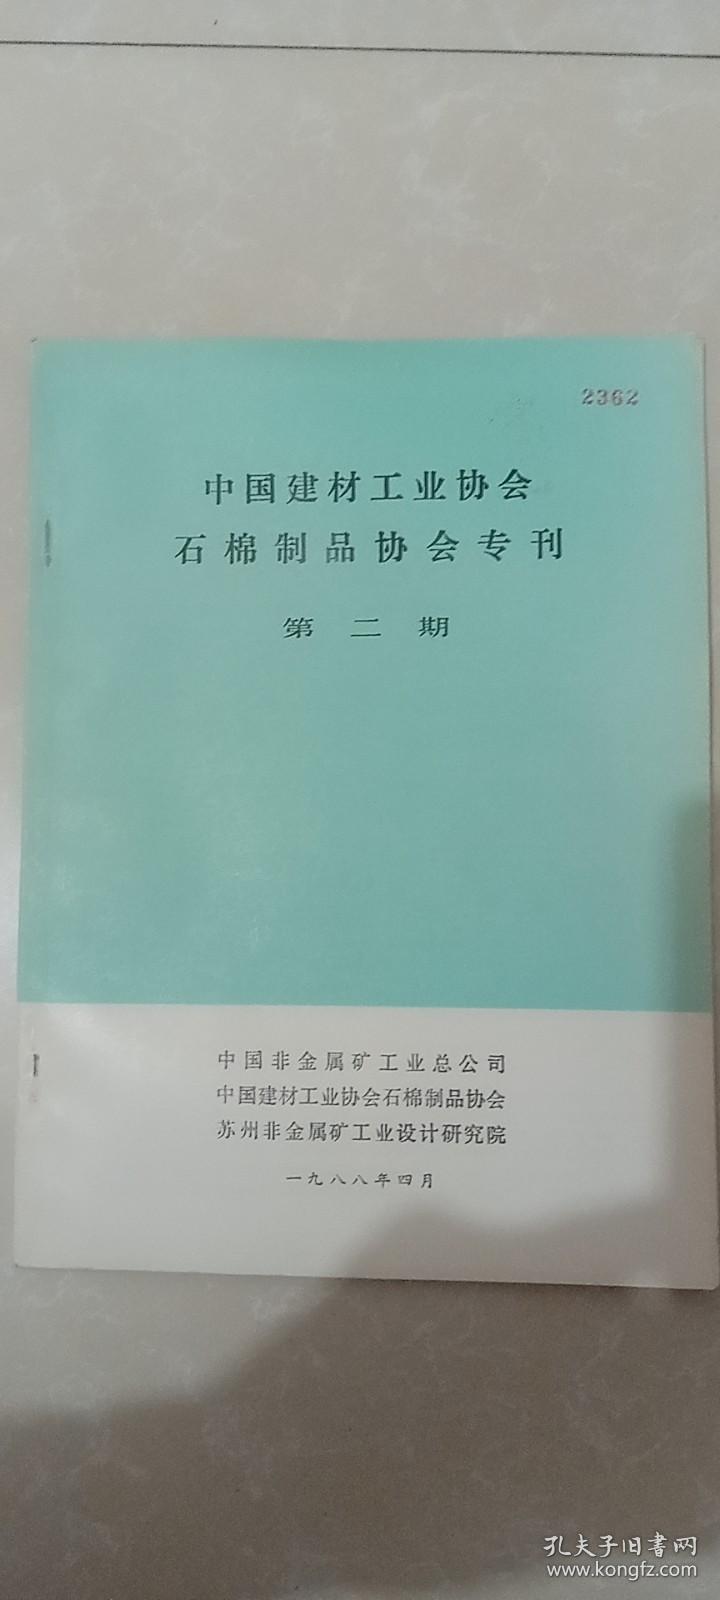 中国建材工业协会石棉制品协会纪念协会成立及有关论文专刊、石棉制品协会专刊第二期。